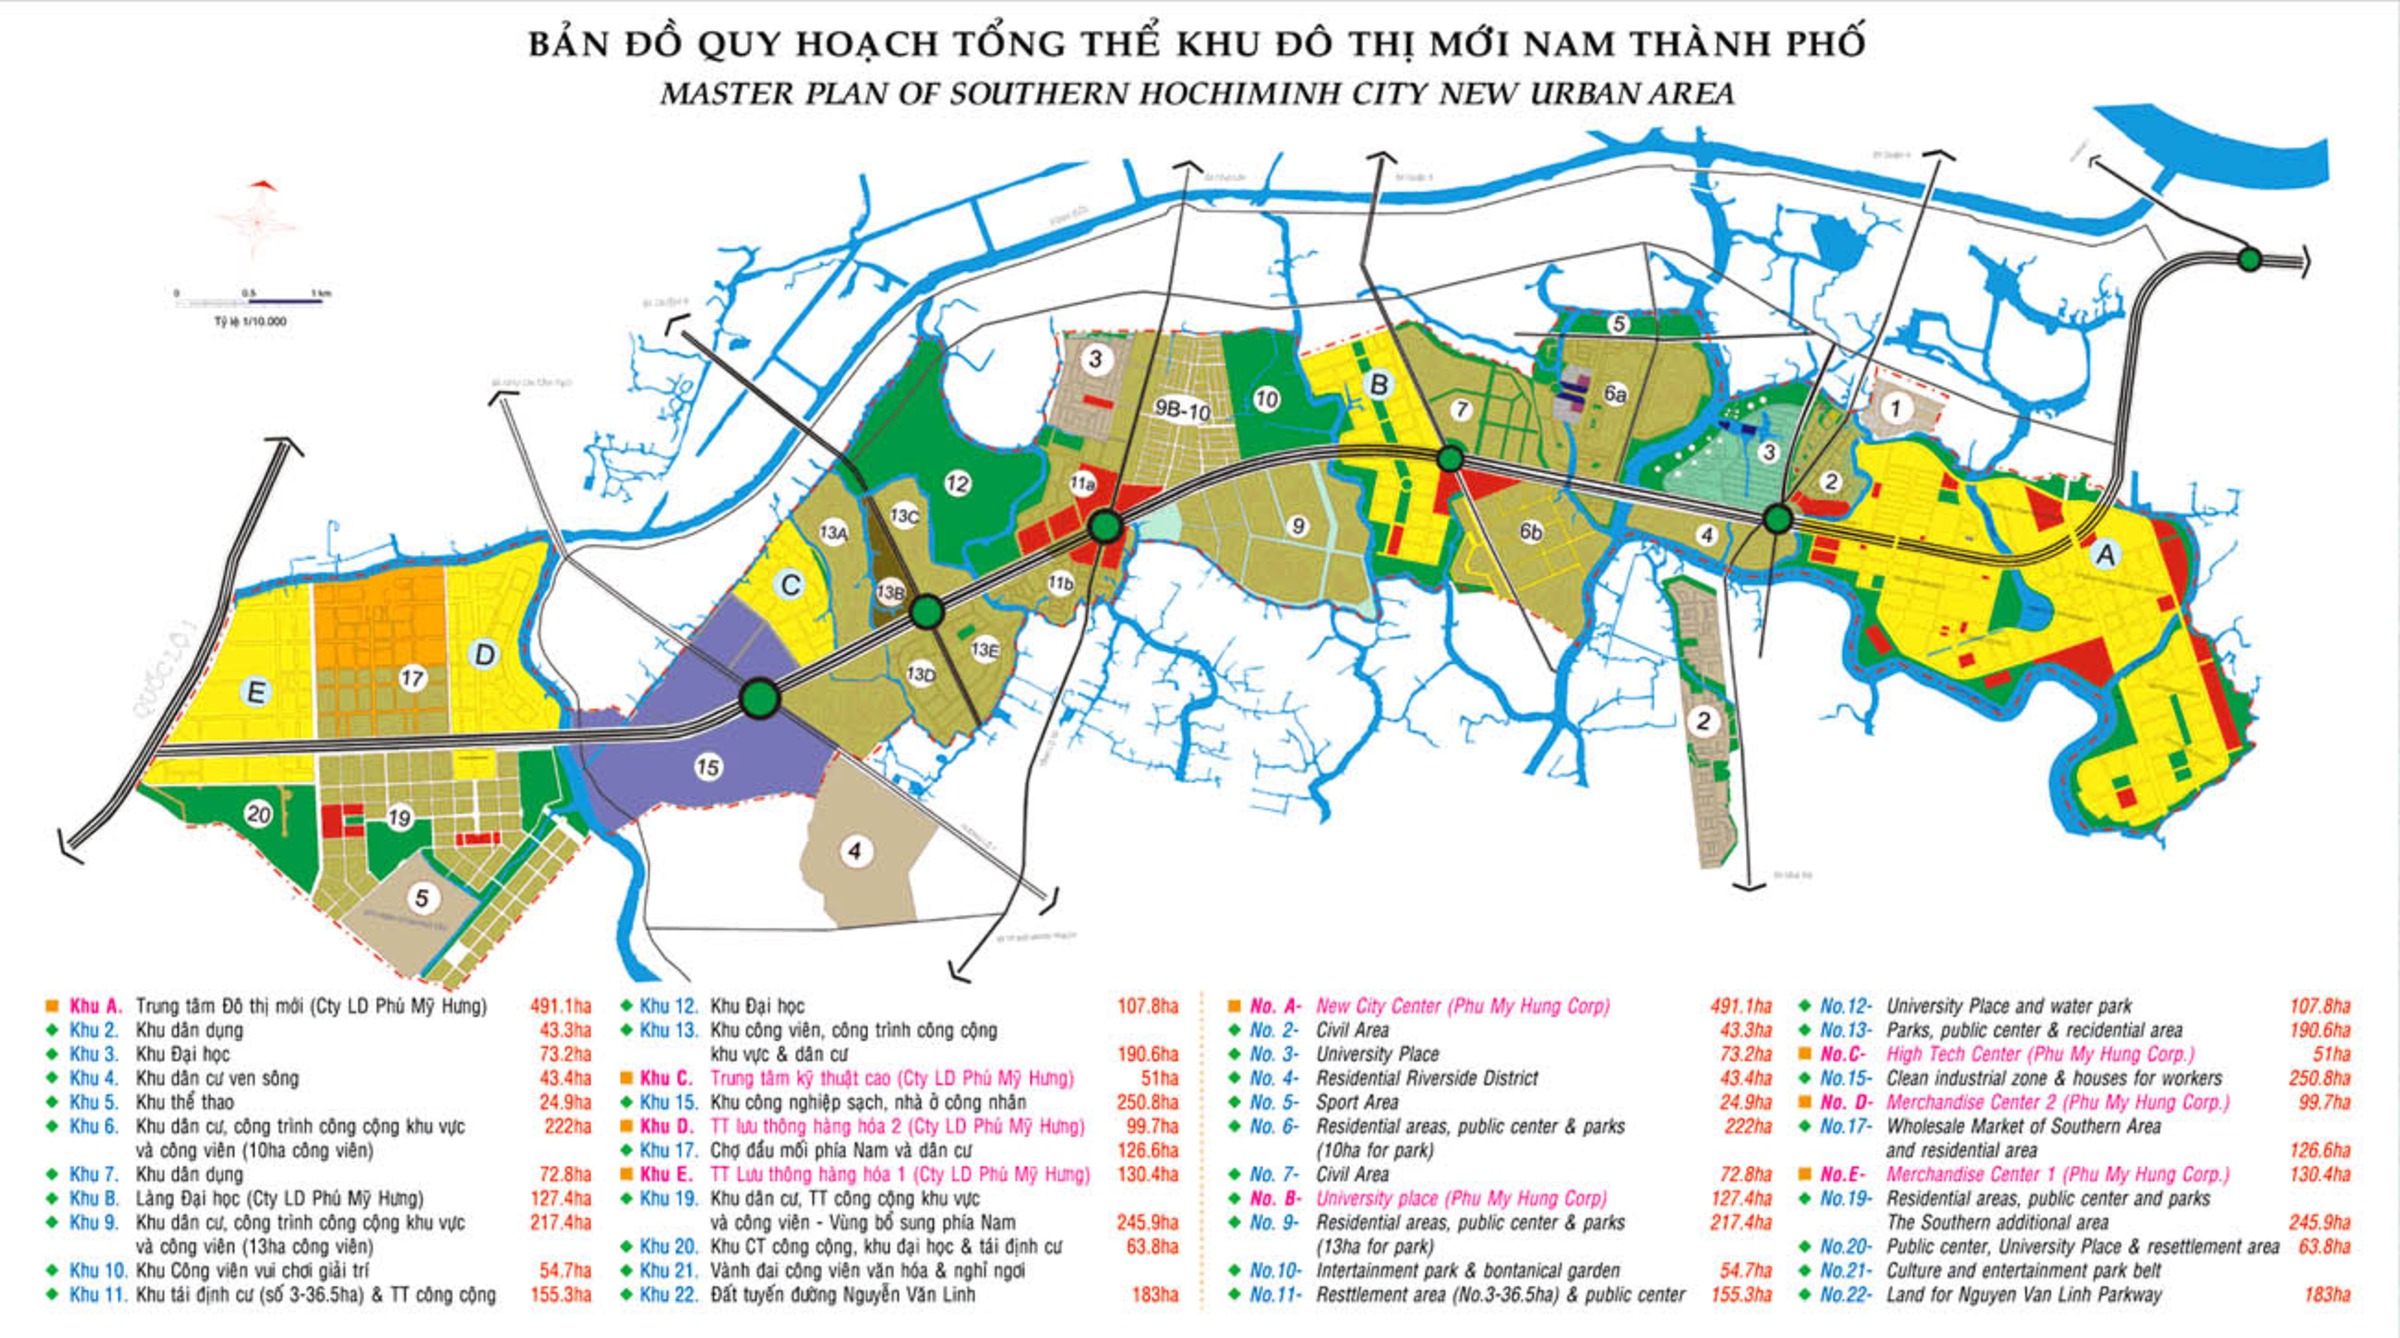 Quy hoạch Đại Học 107 hecta tại Khu đô thị mới Nam thành phố HCM